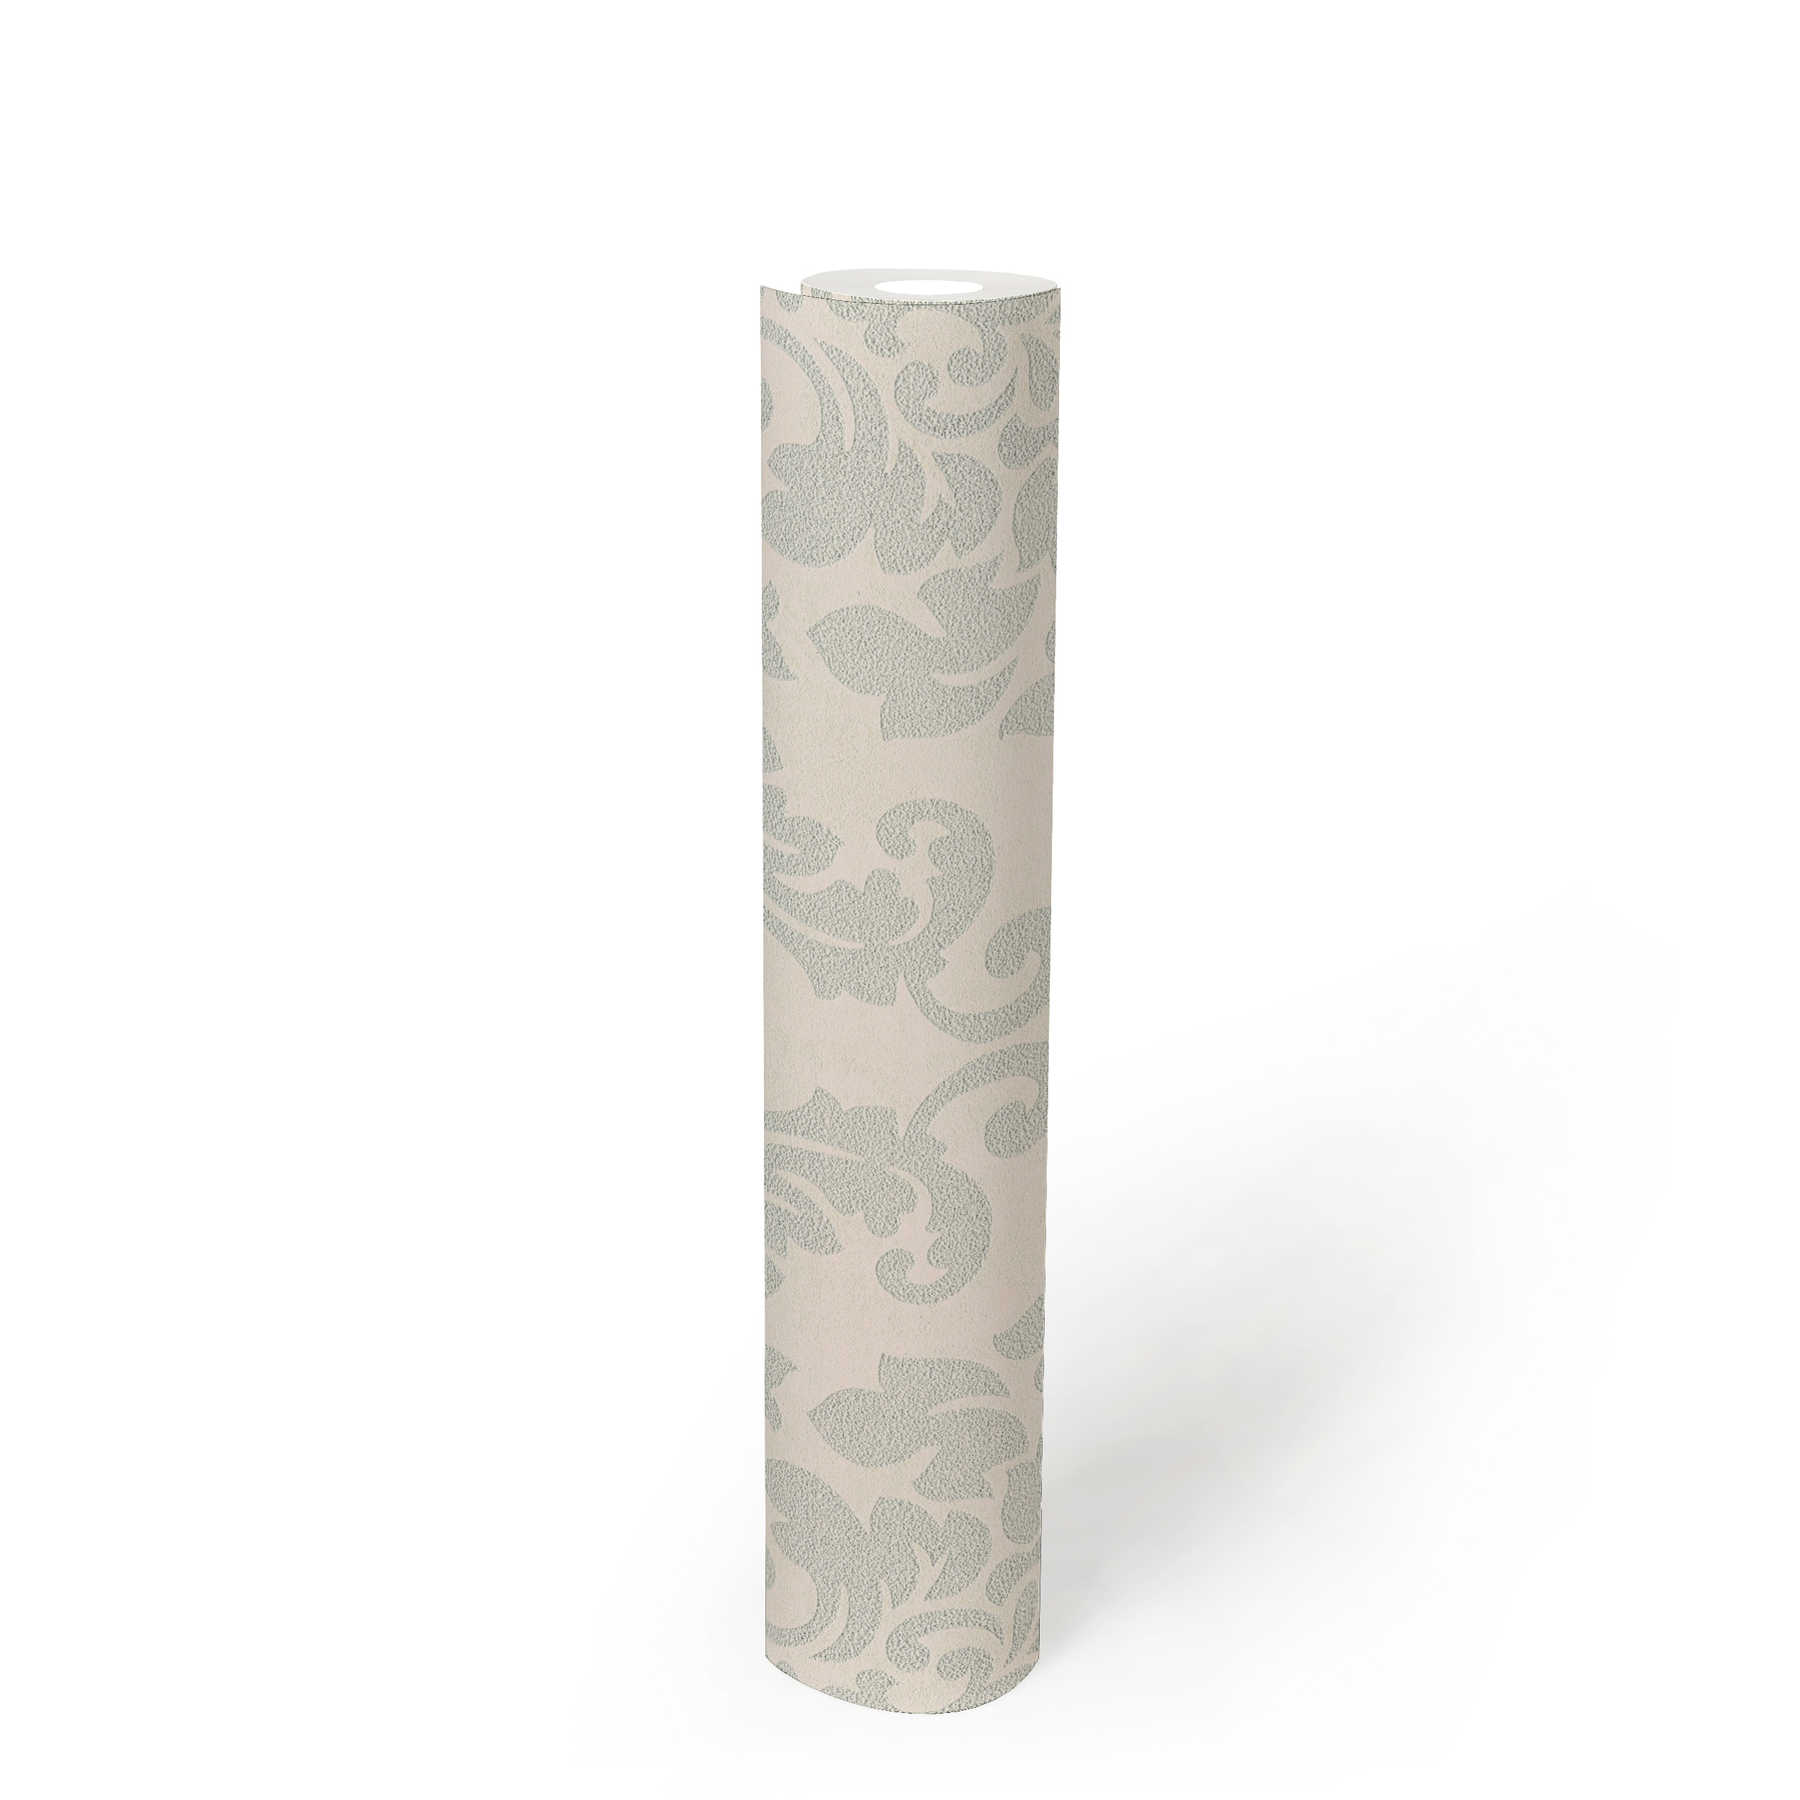             Papier peint ornemental floral avec effet métallique - gris, argent, blanc
        